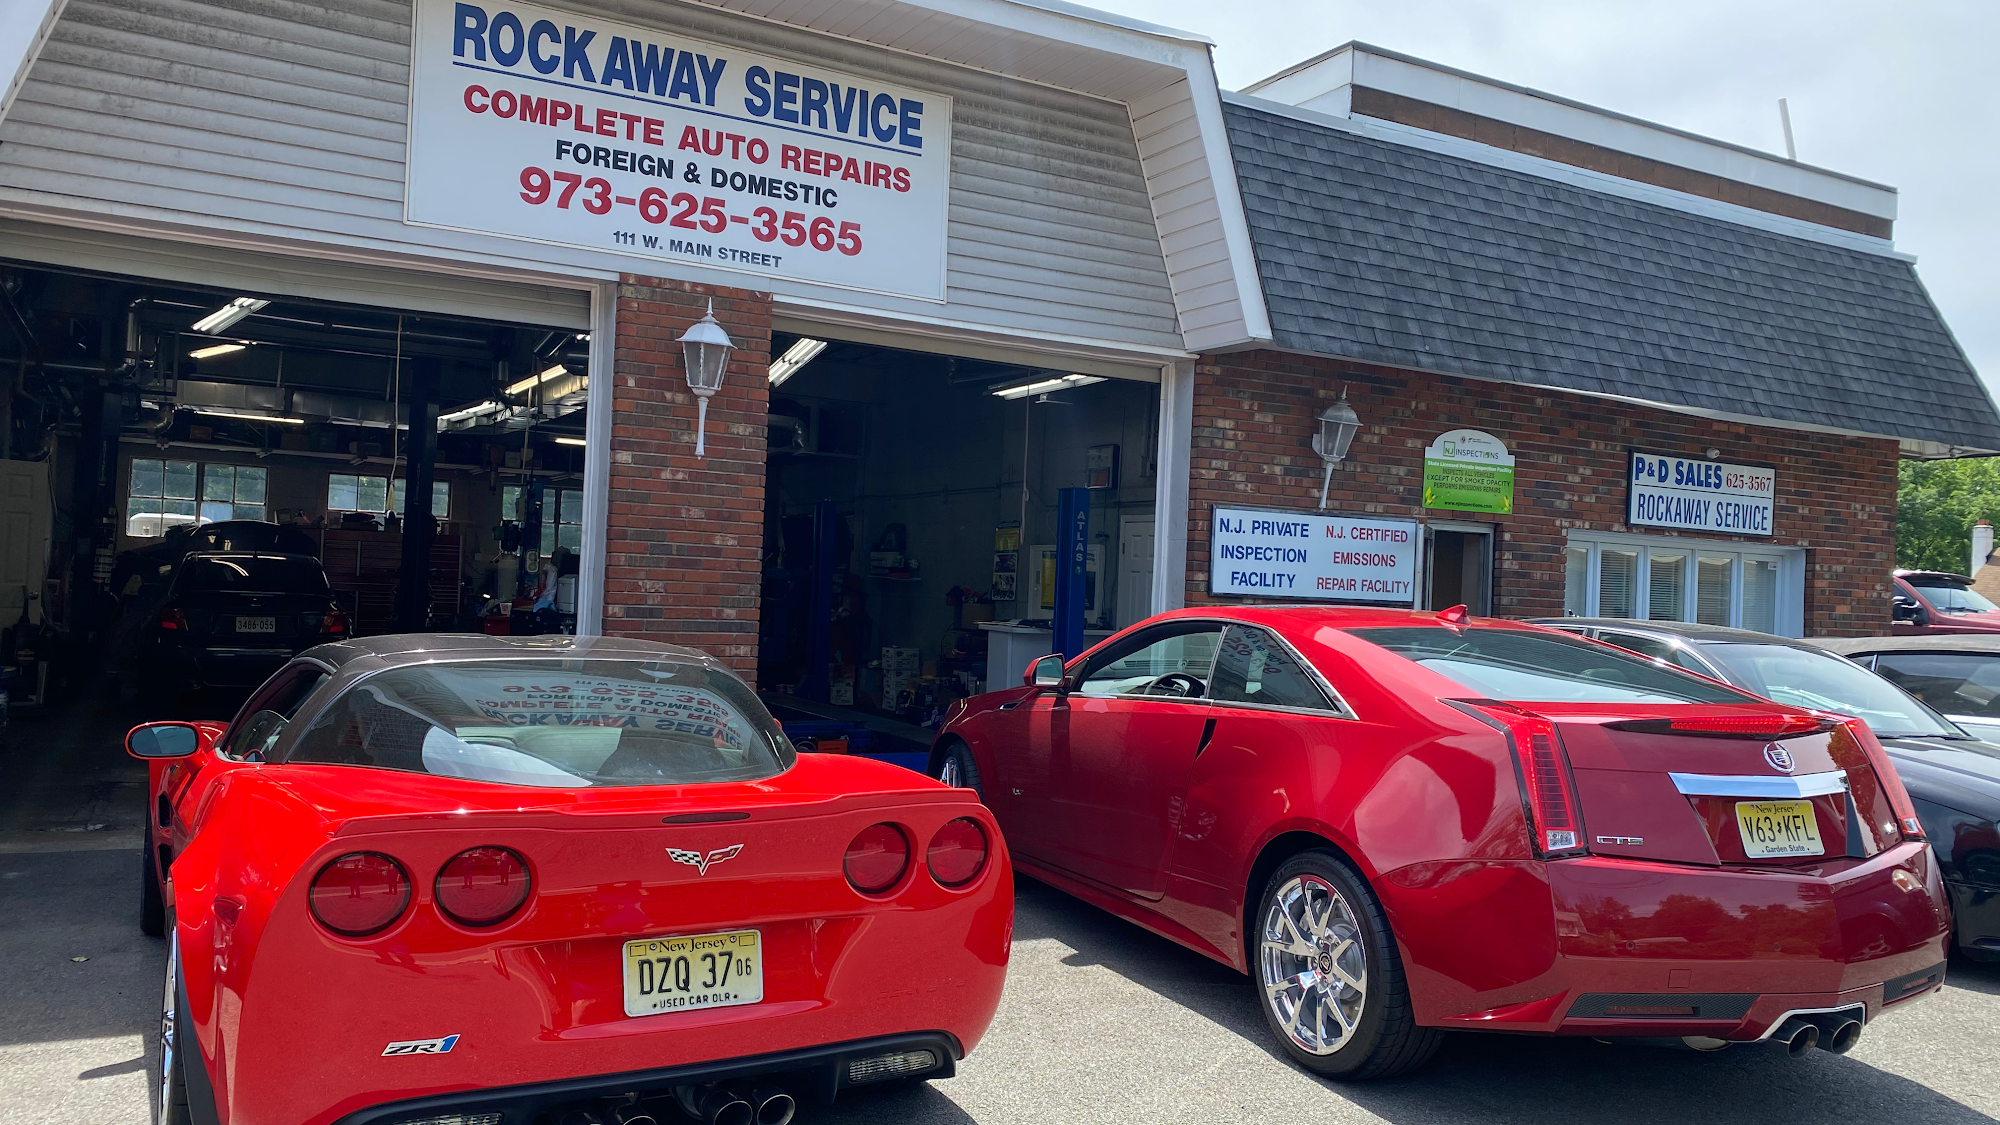 Rockaway Service